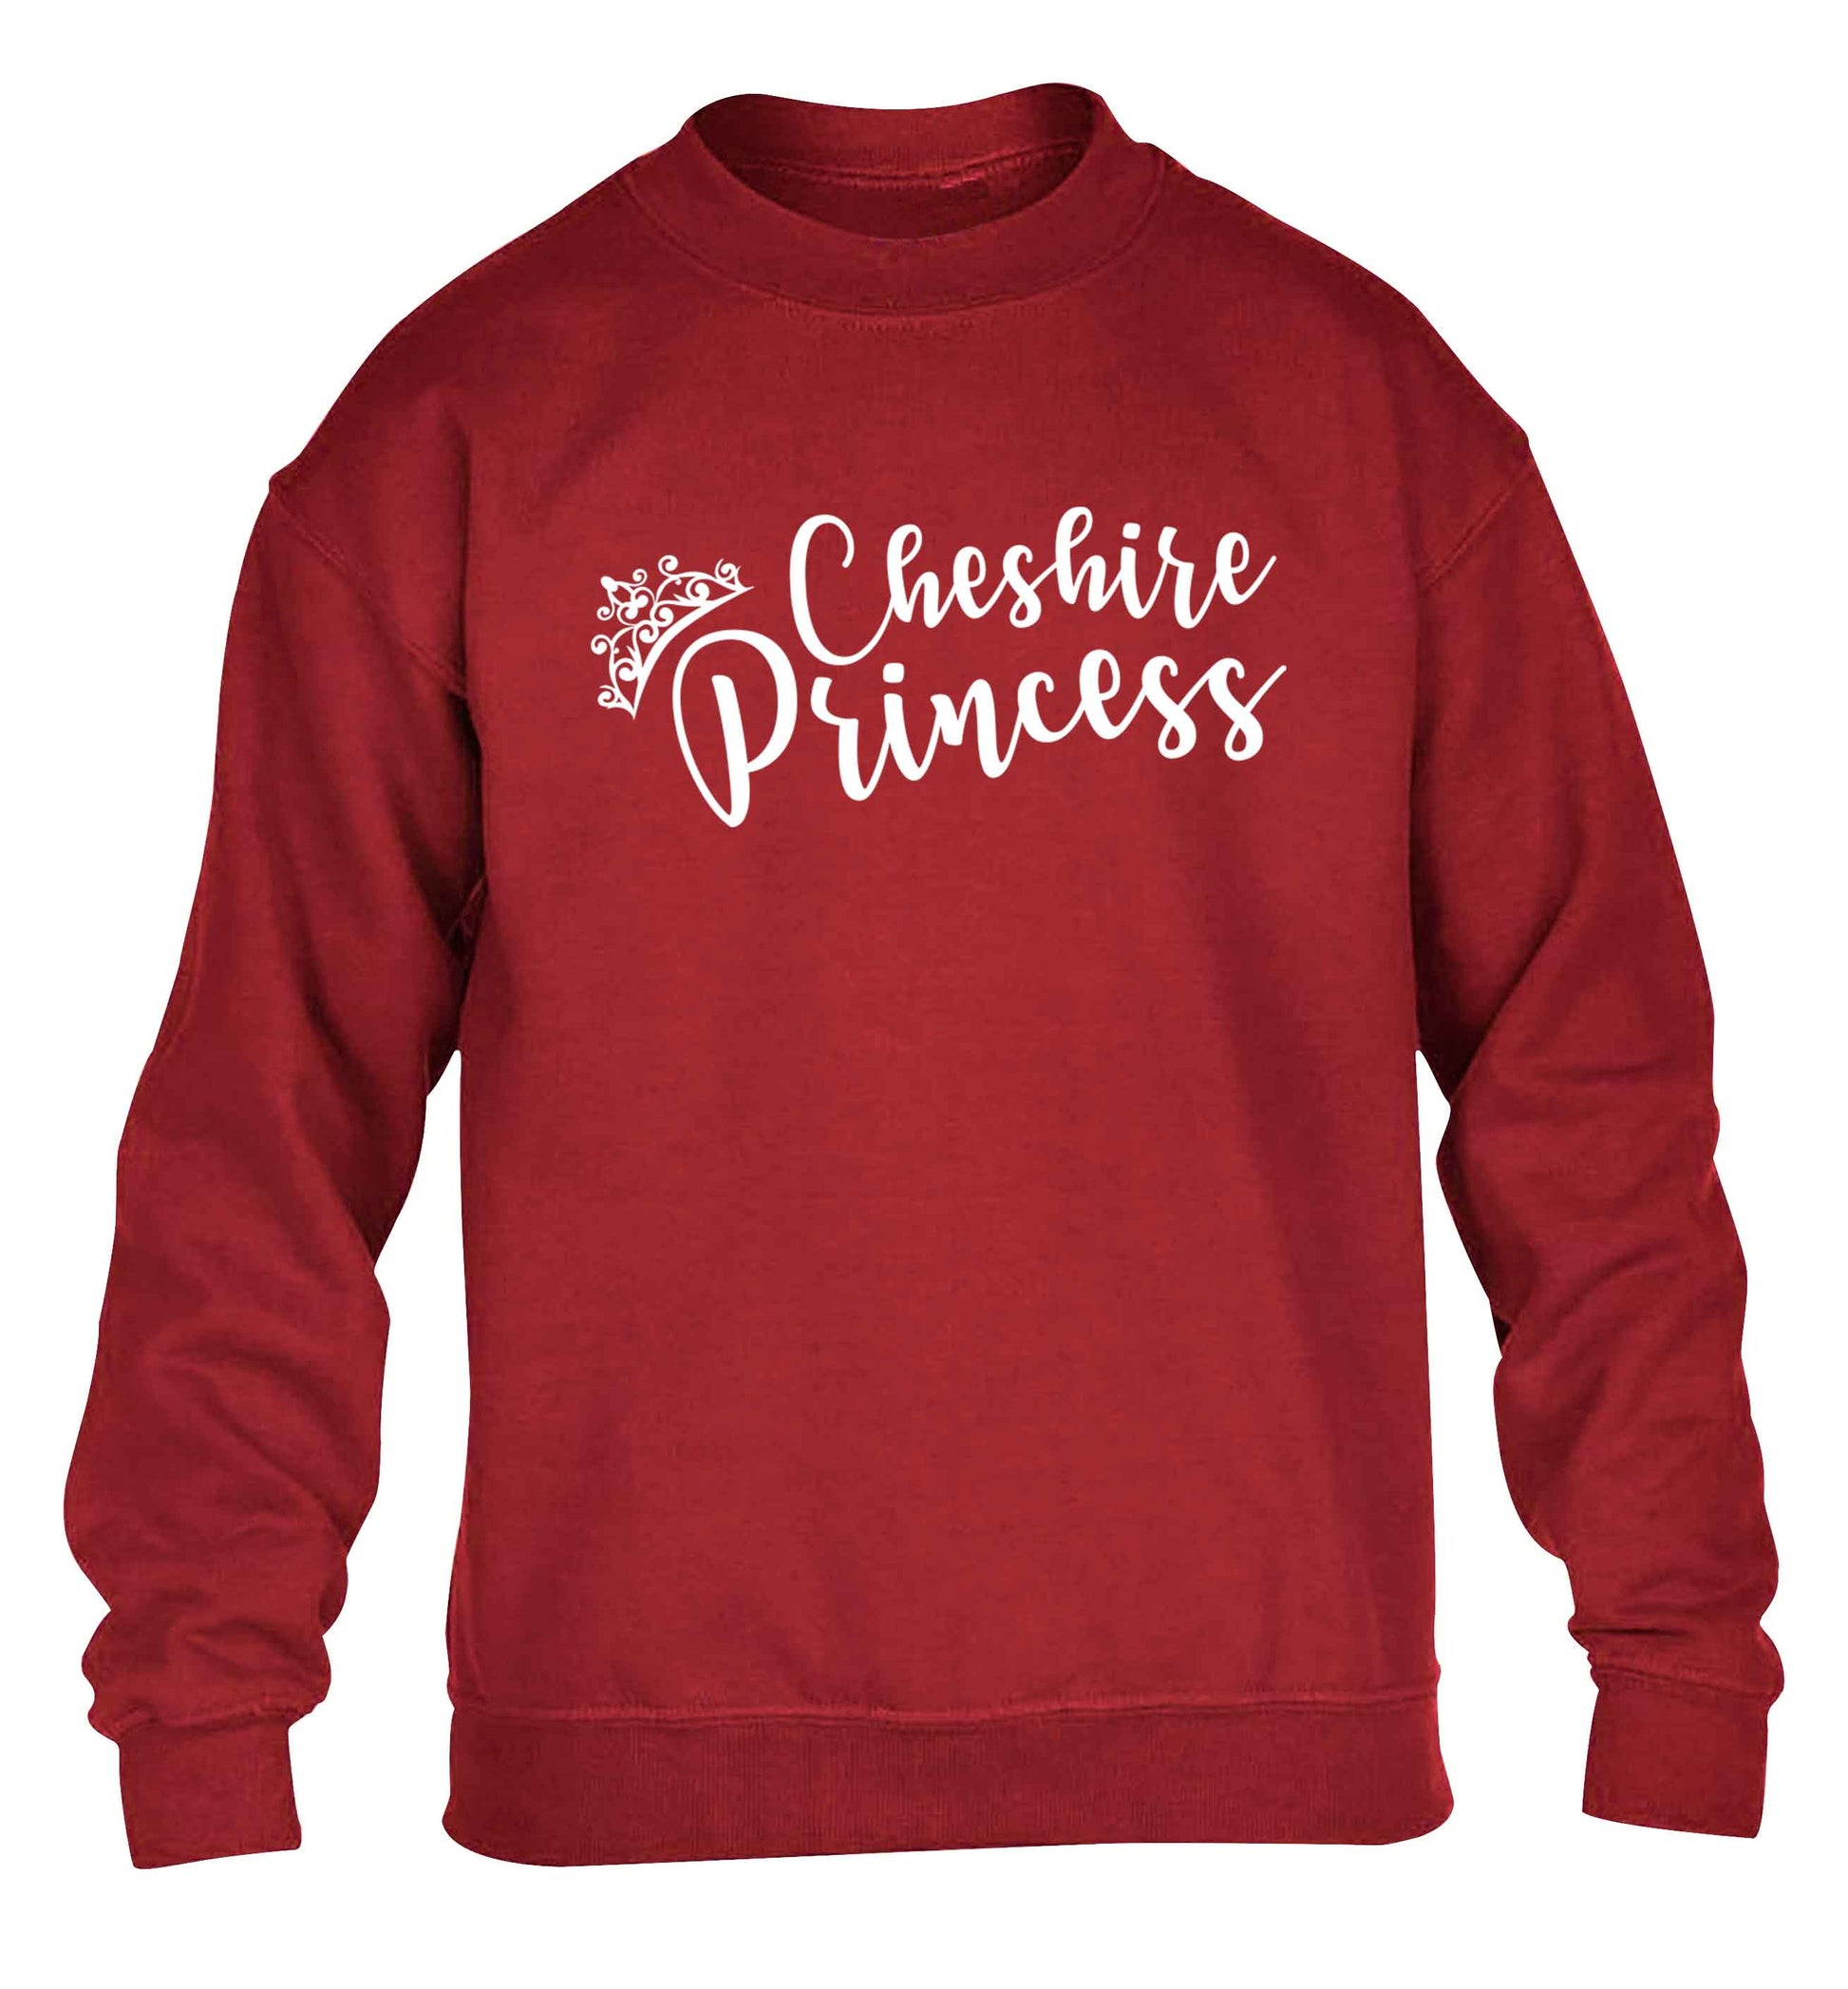 Cheshire princess children's grey sweater 12-13 Years